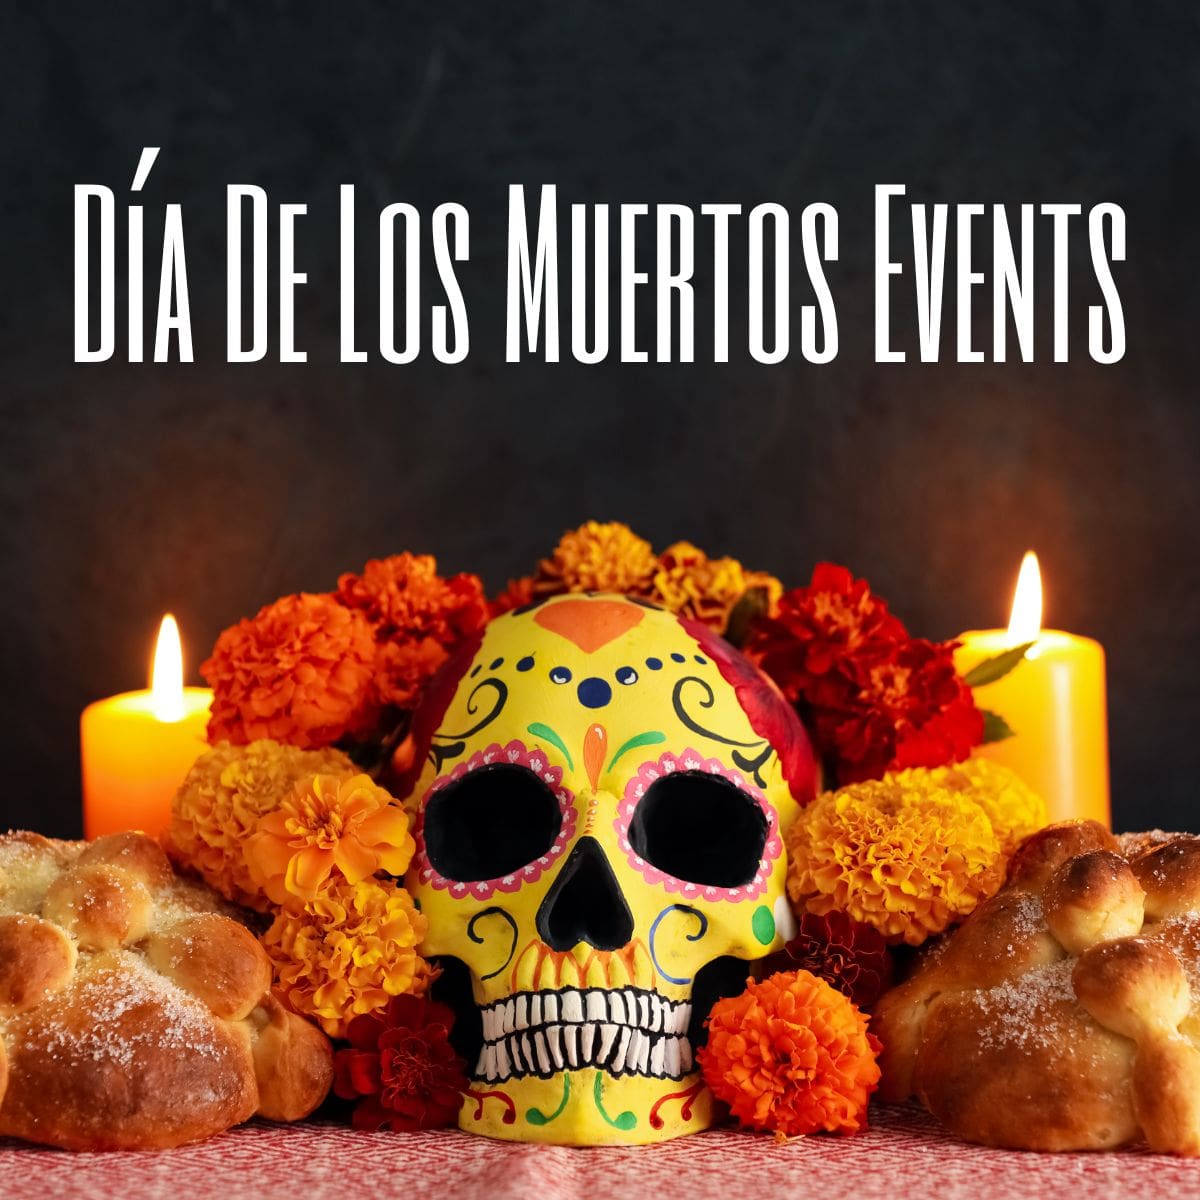 Dia De Los Muertos (Day Of The Dead) Events